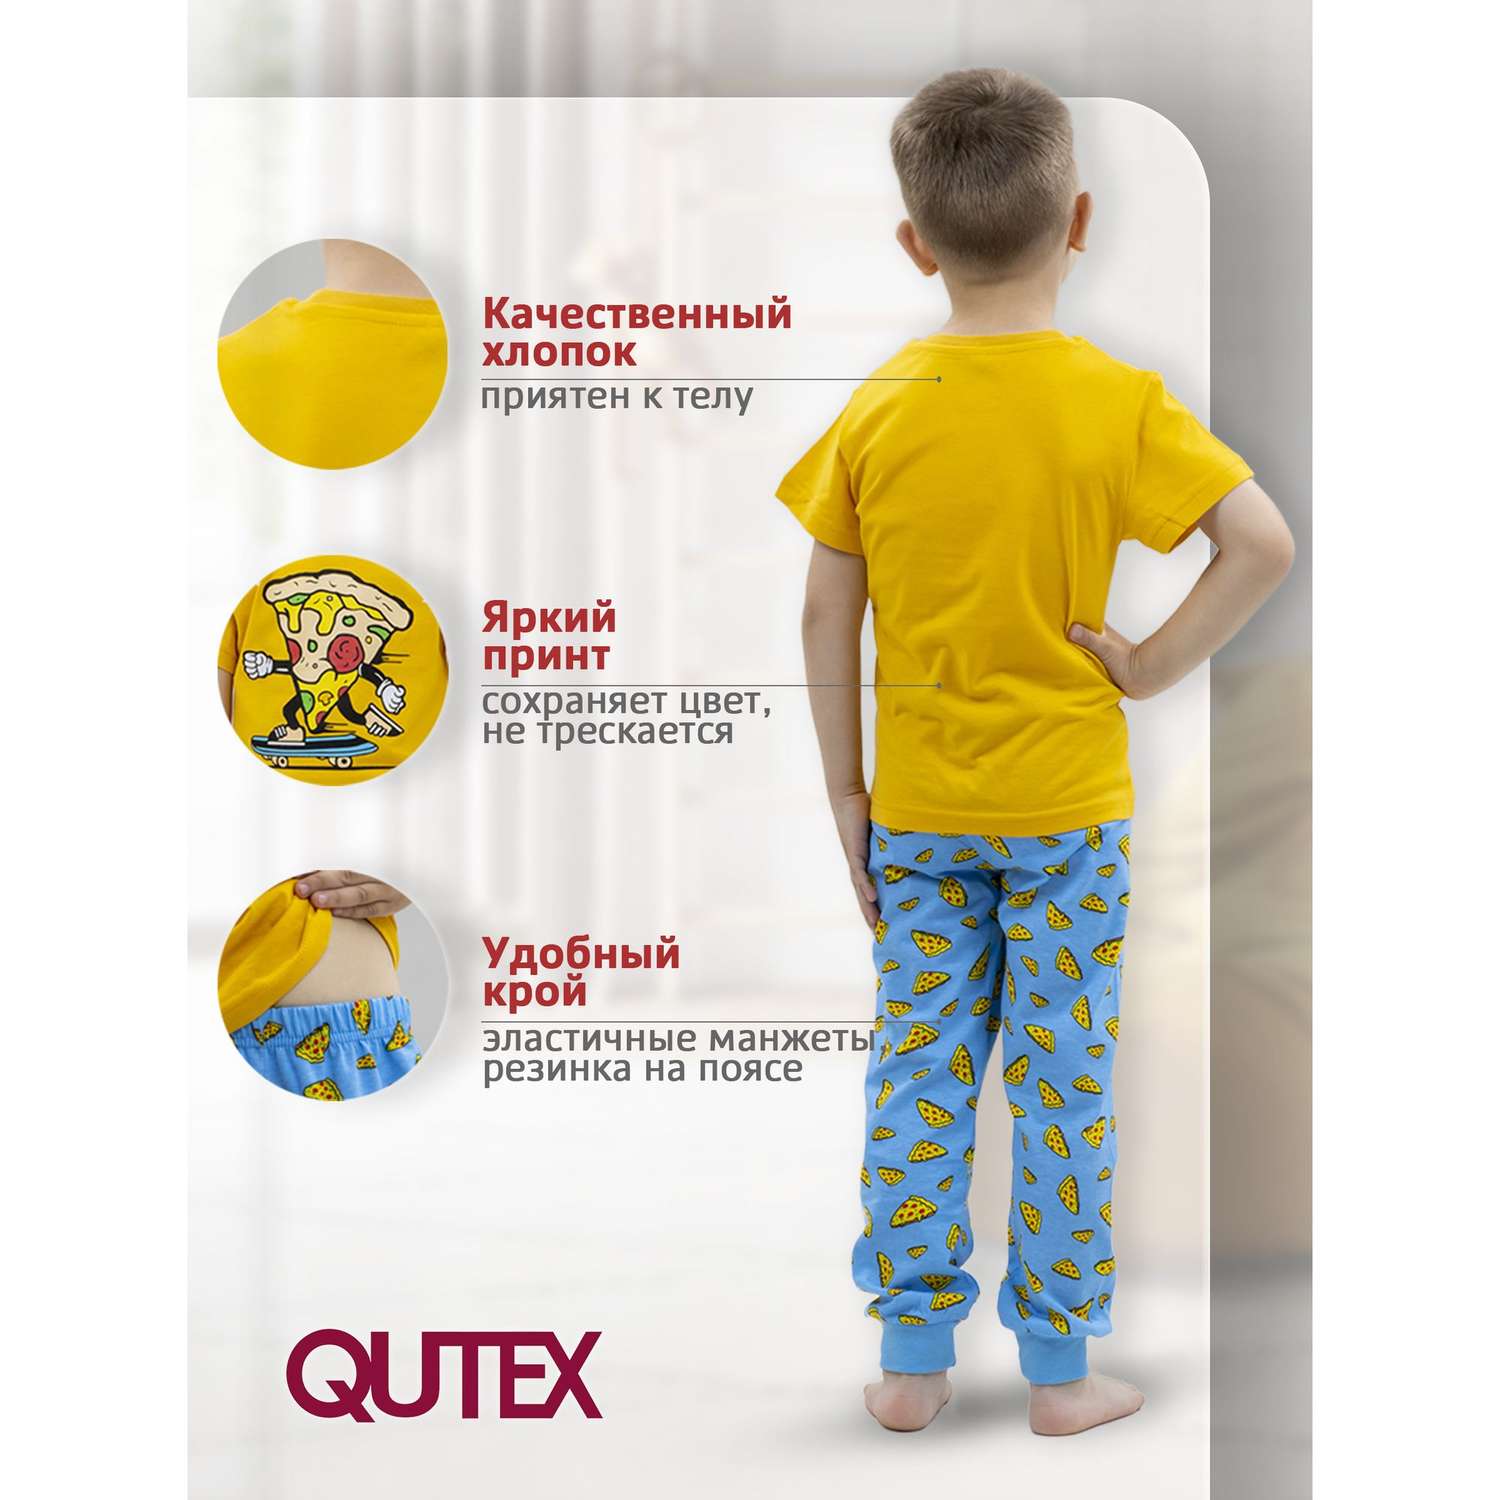 Пижама QUTEX 2401-005-1Q34 - фото 3